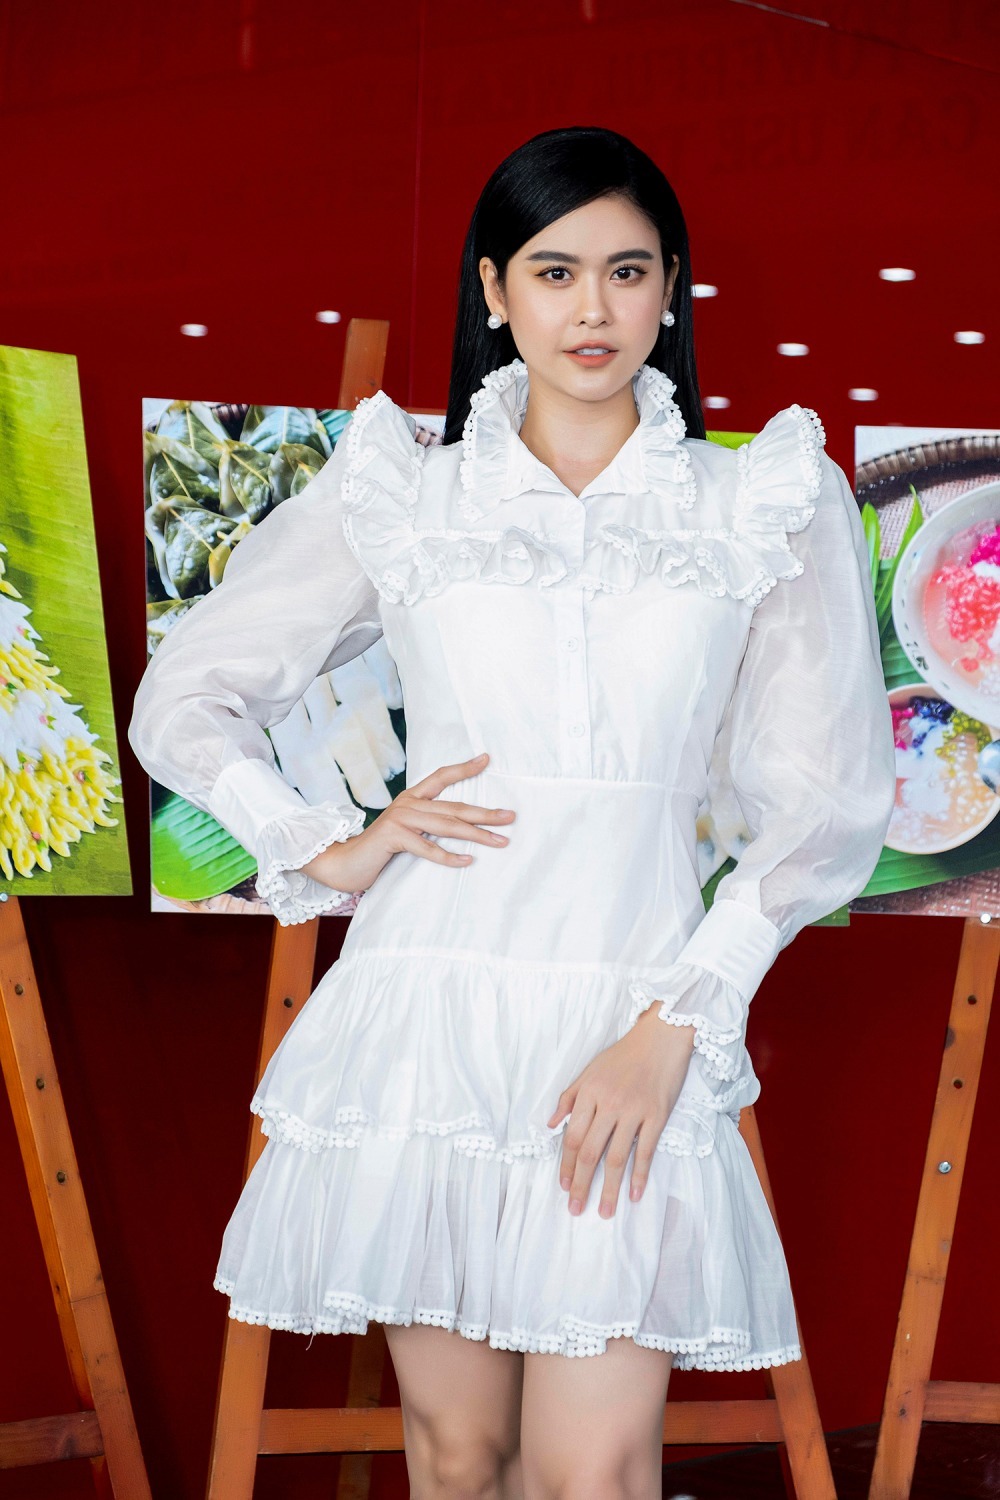  
Trương Quỳnh Anh diện chiếc váy trắng khá công chúa.